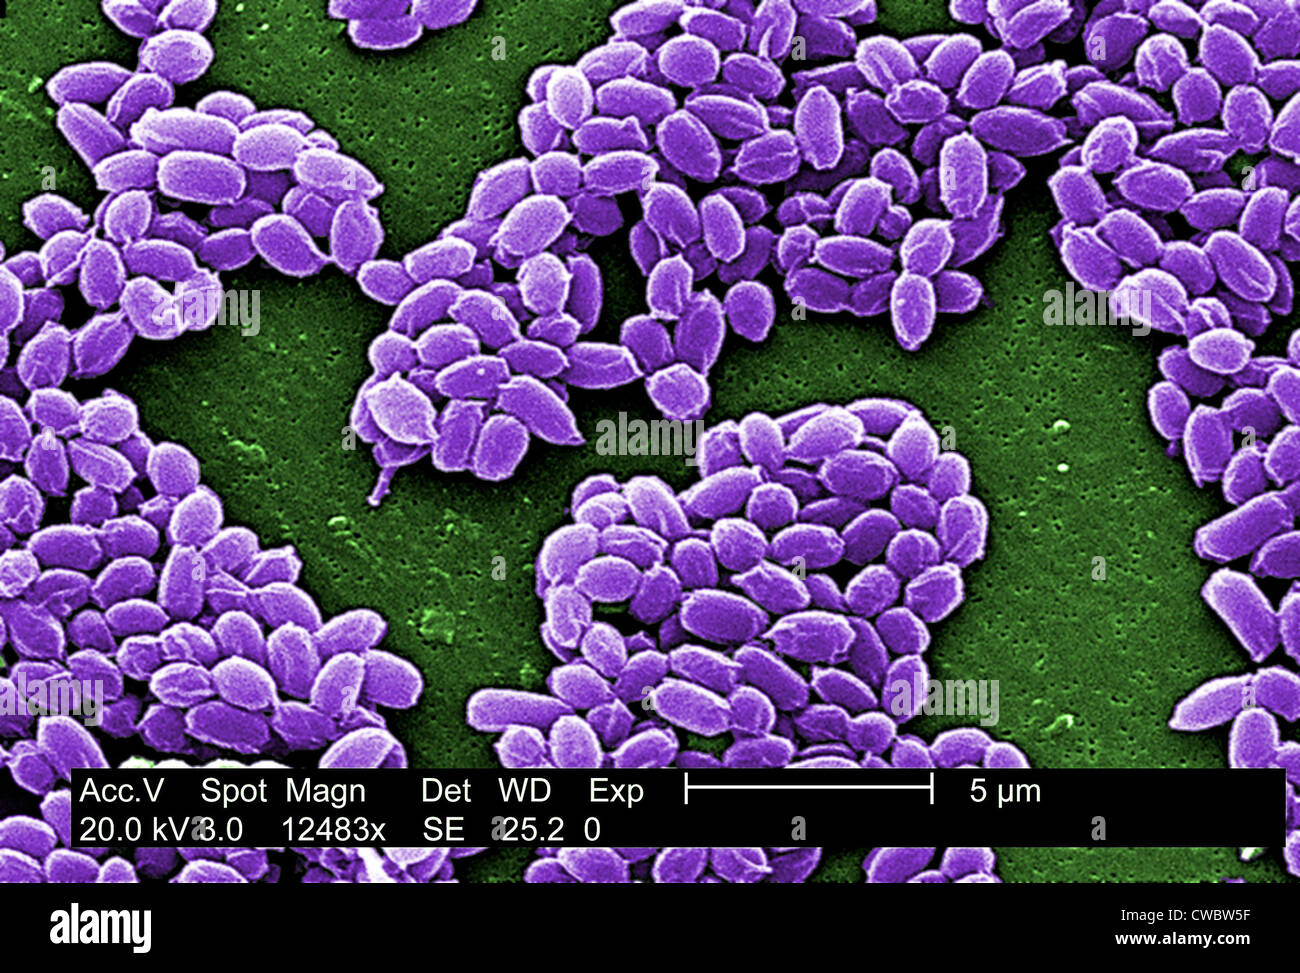 Sporen von einem Milzbrandbakterien. Diese Sporen Leben seit vielen Jahren die Bakterien in einem schlafenden Zustand überleben. Foto: Stockfoto